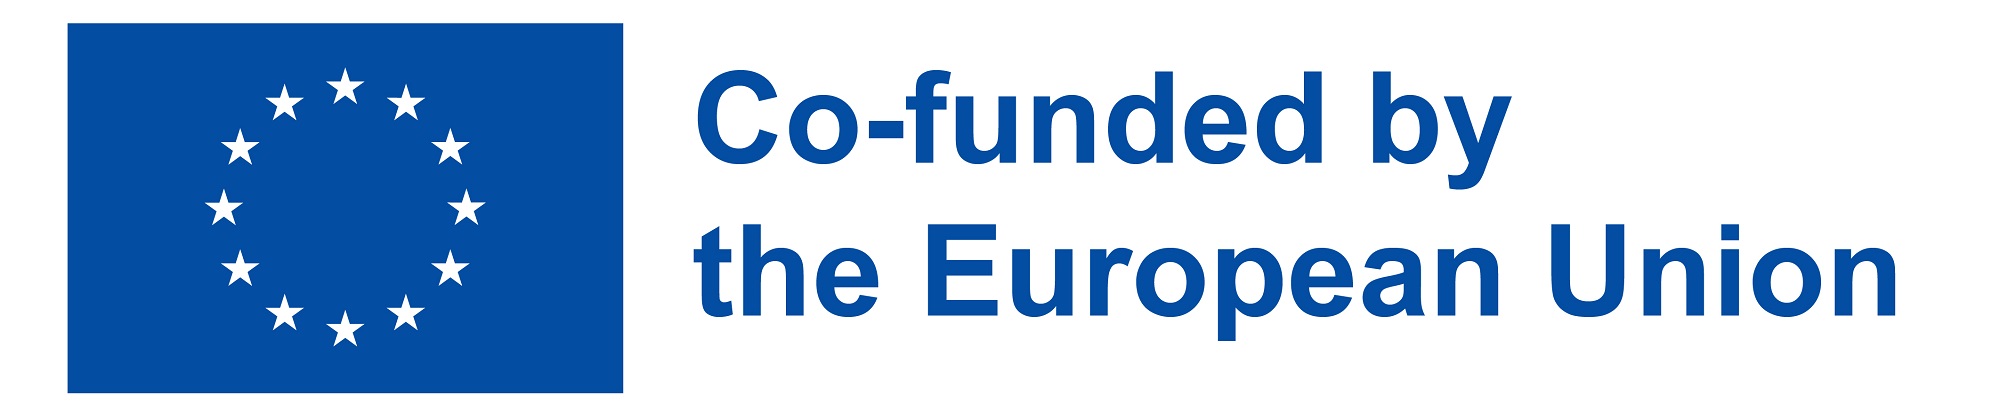 Euroopan unionin sininen lippu jossa valkoisia tähtiä ympyrässä. Kuvassa teksti co-funded by the European Union.